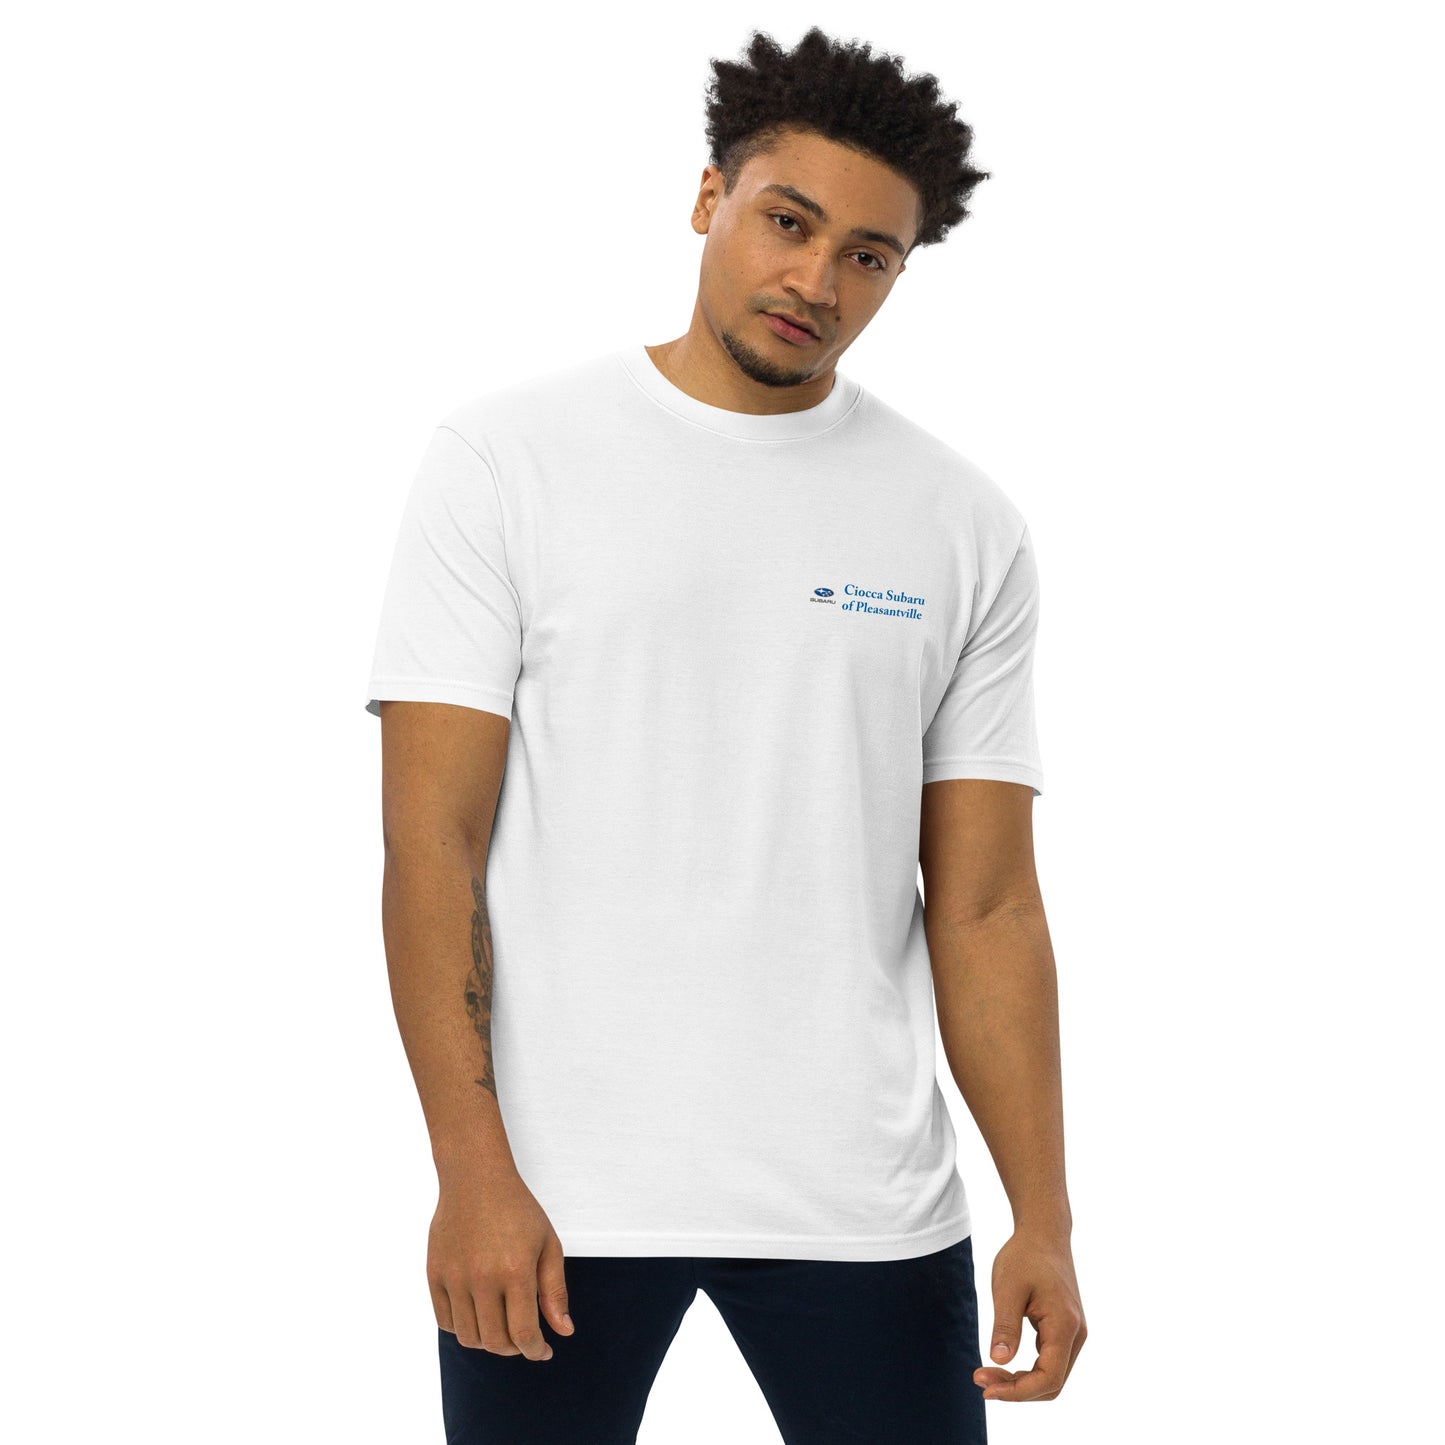 Premium Heavyweight T-shirt - Subaru of Pleasantville